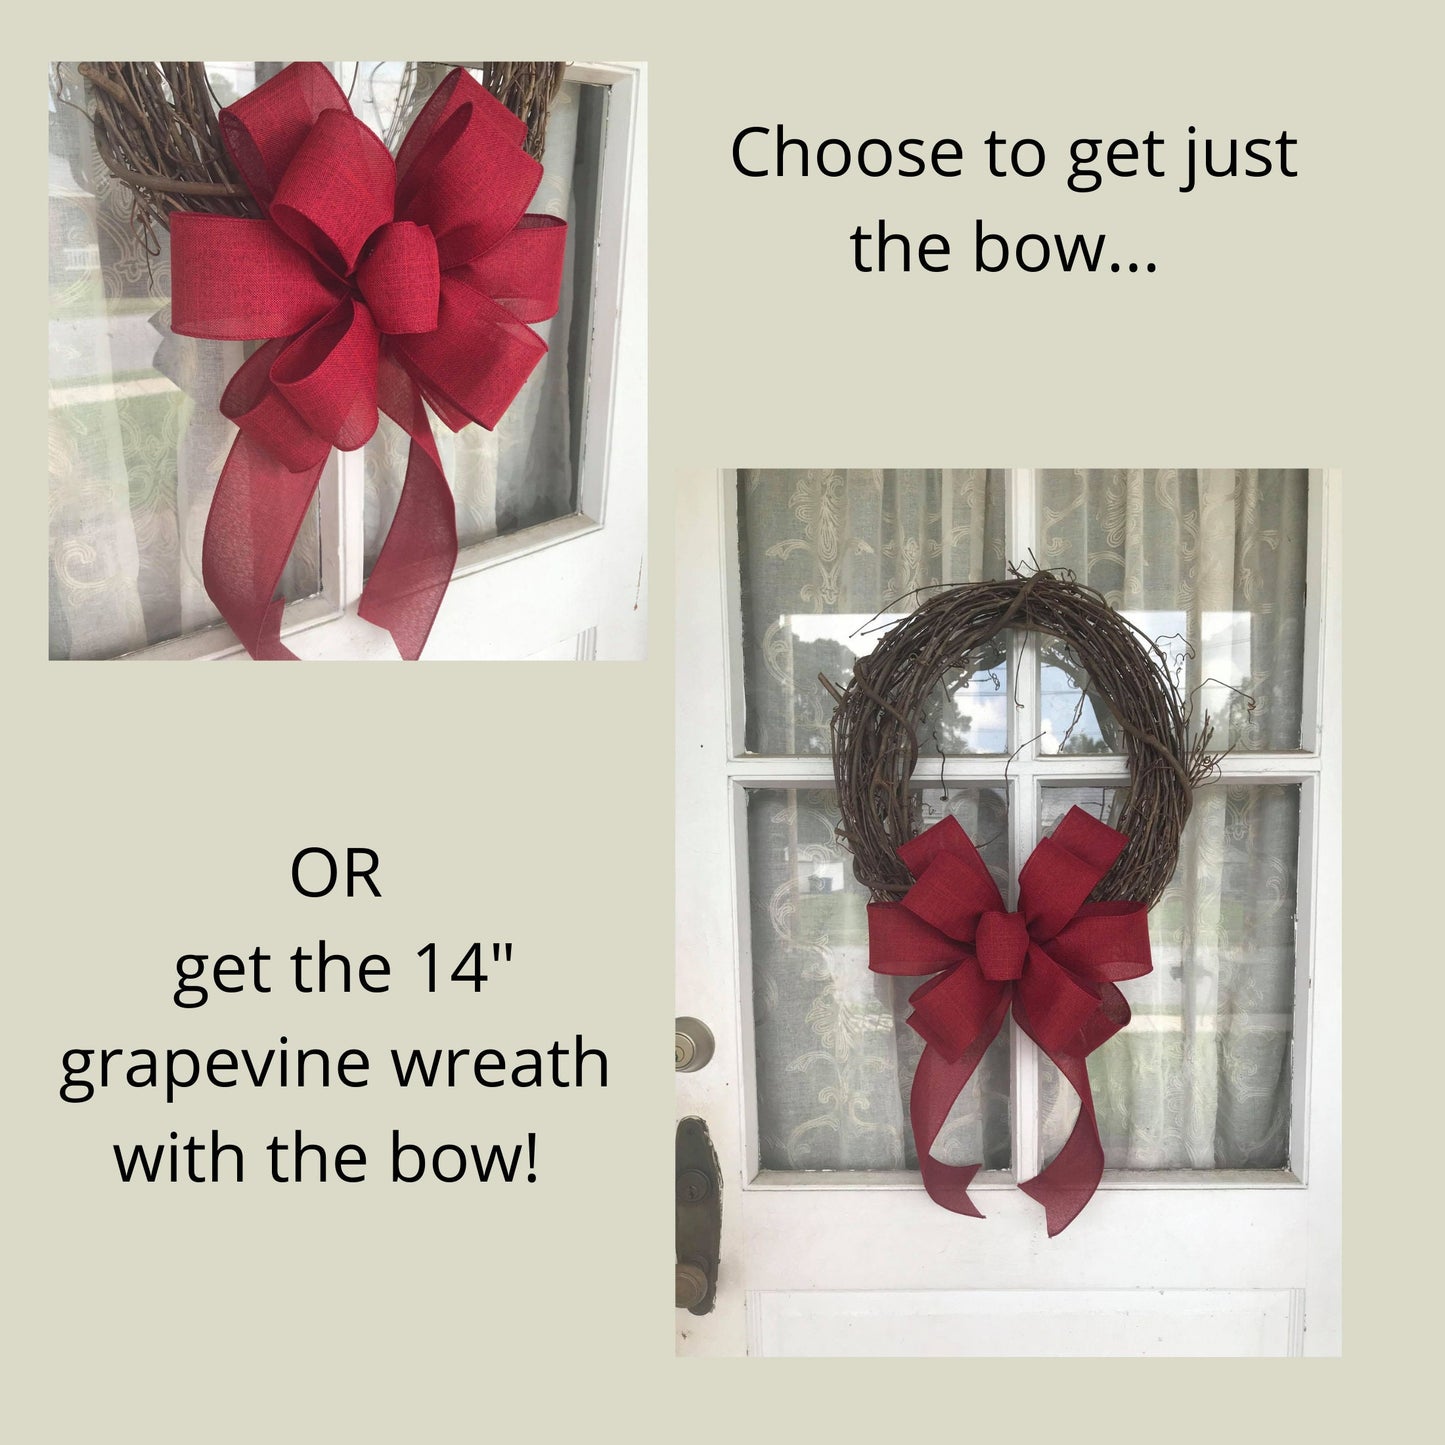 Fall Wreath, Burgundy Linen Bow, Farmhouse wreath, Game Day Bow